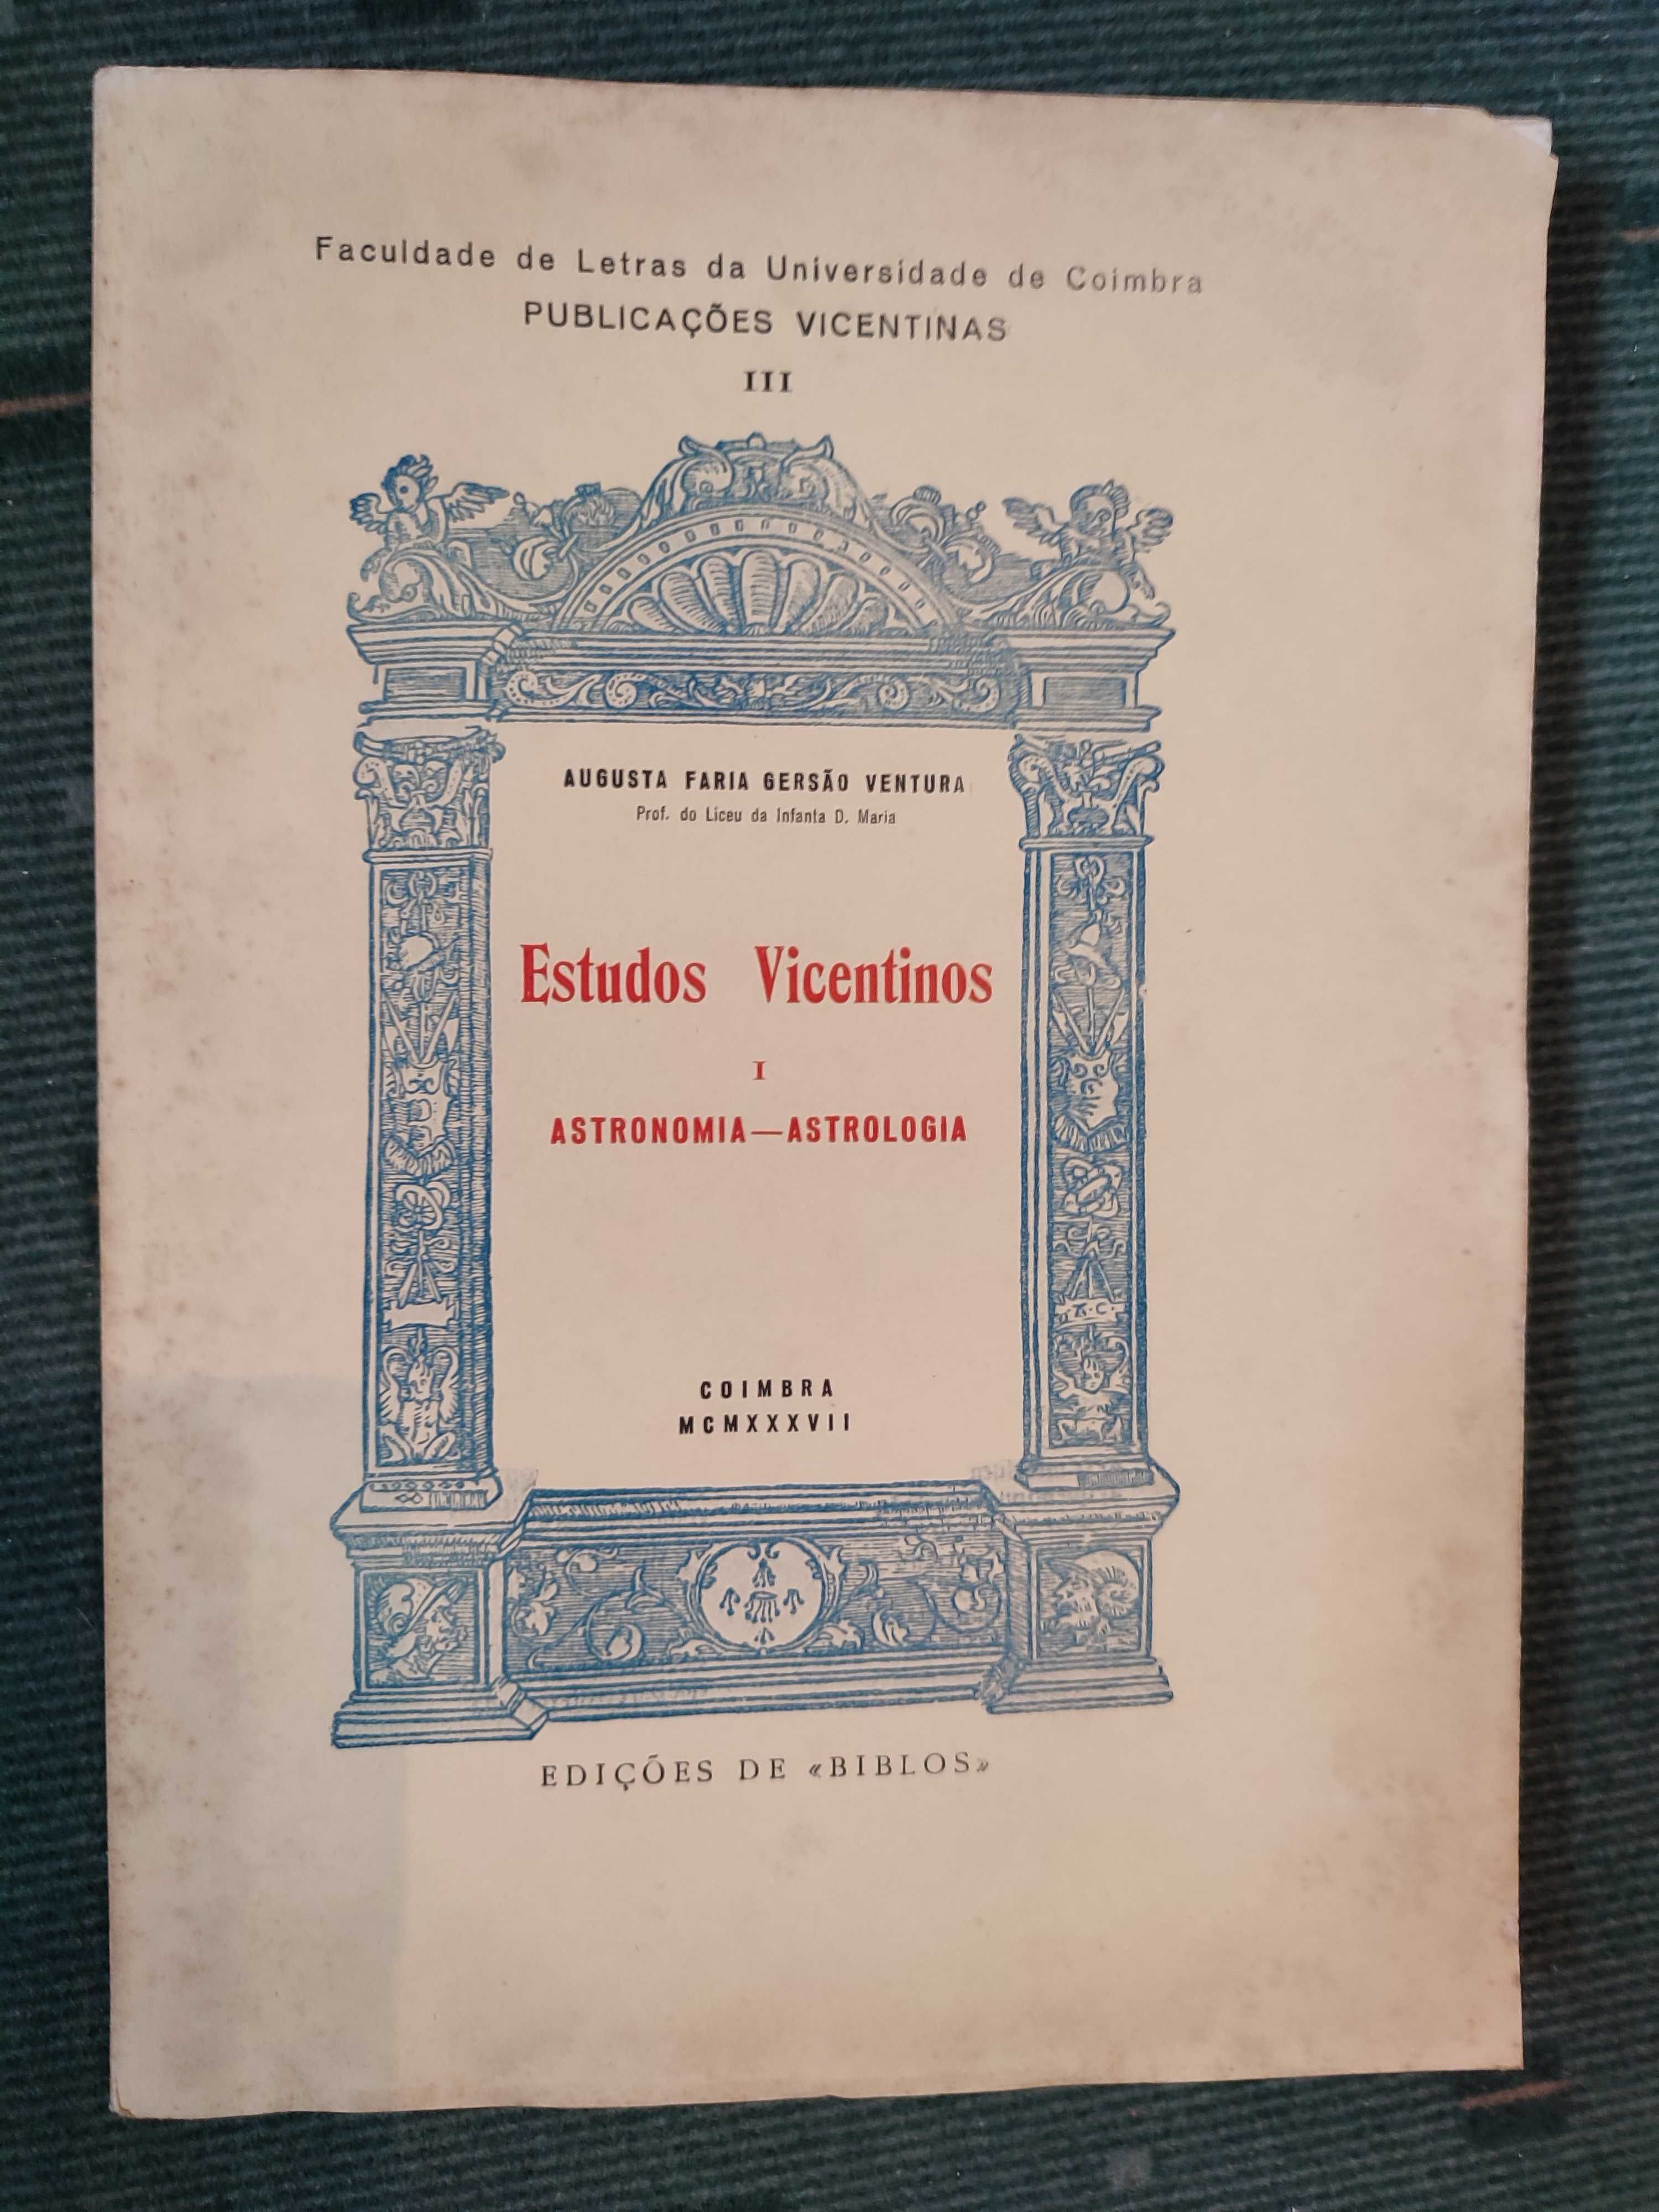 Estudos Vicentinos I - Astronomia-astrologia - 1937